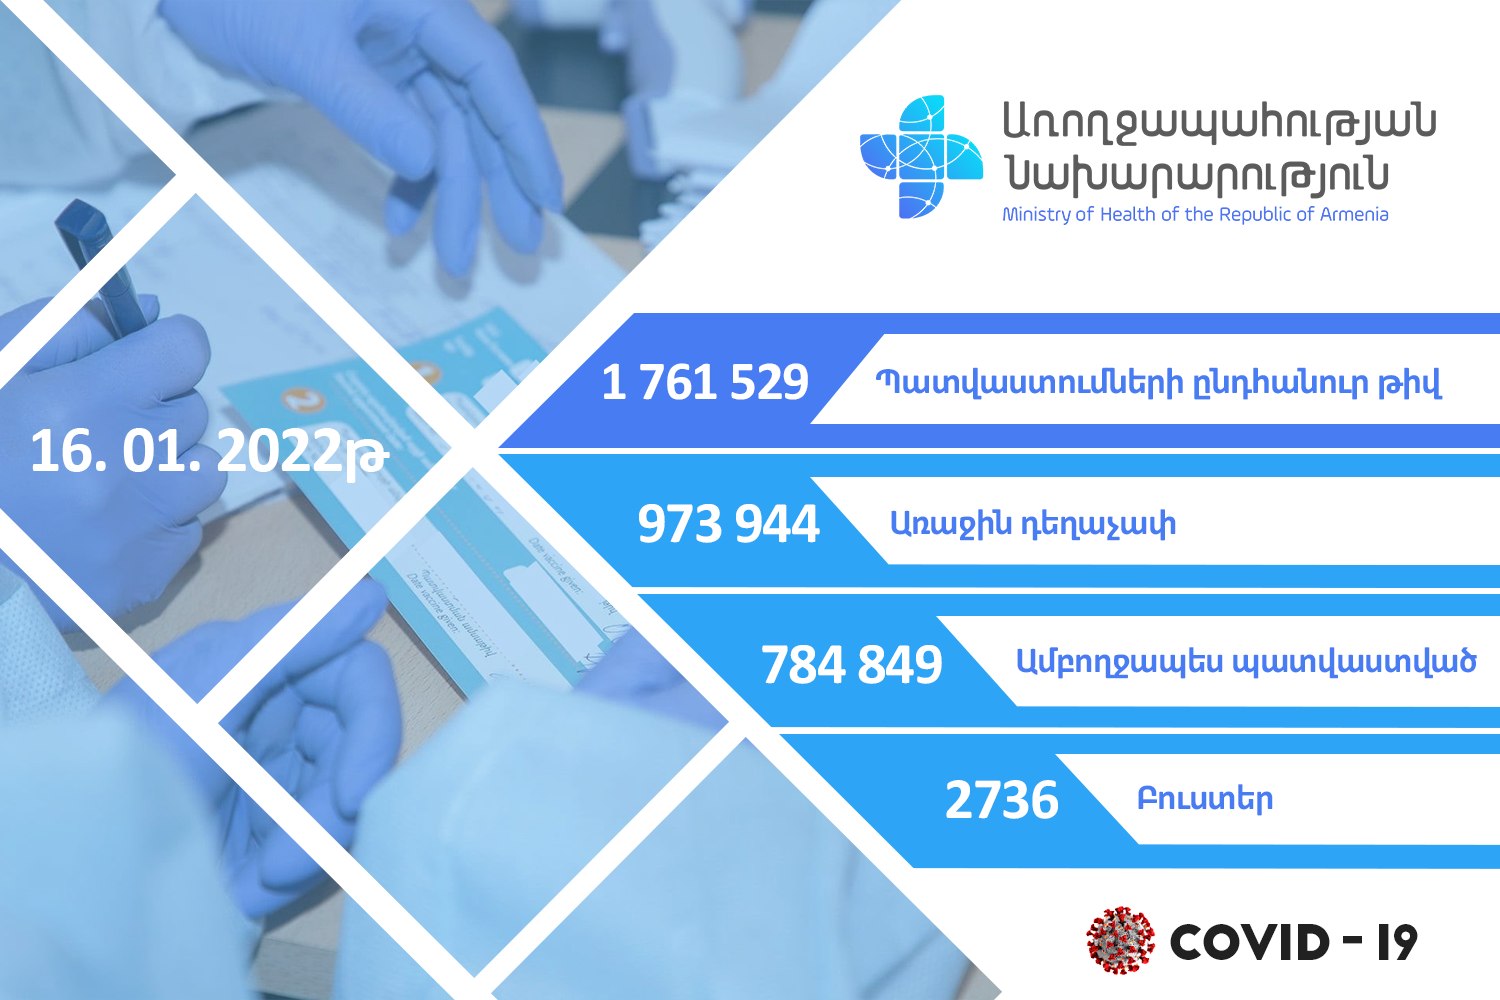 В Армении против COVID-19 осуществлена вакцинация 1 761 529 человек - Минздрав